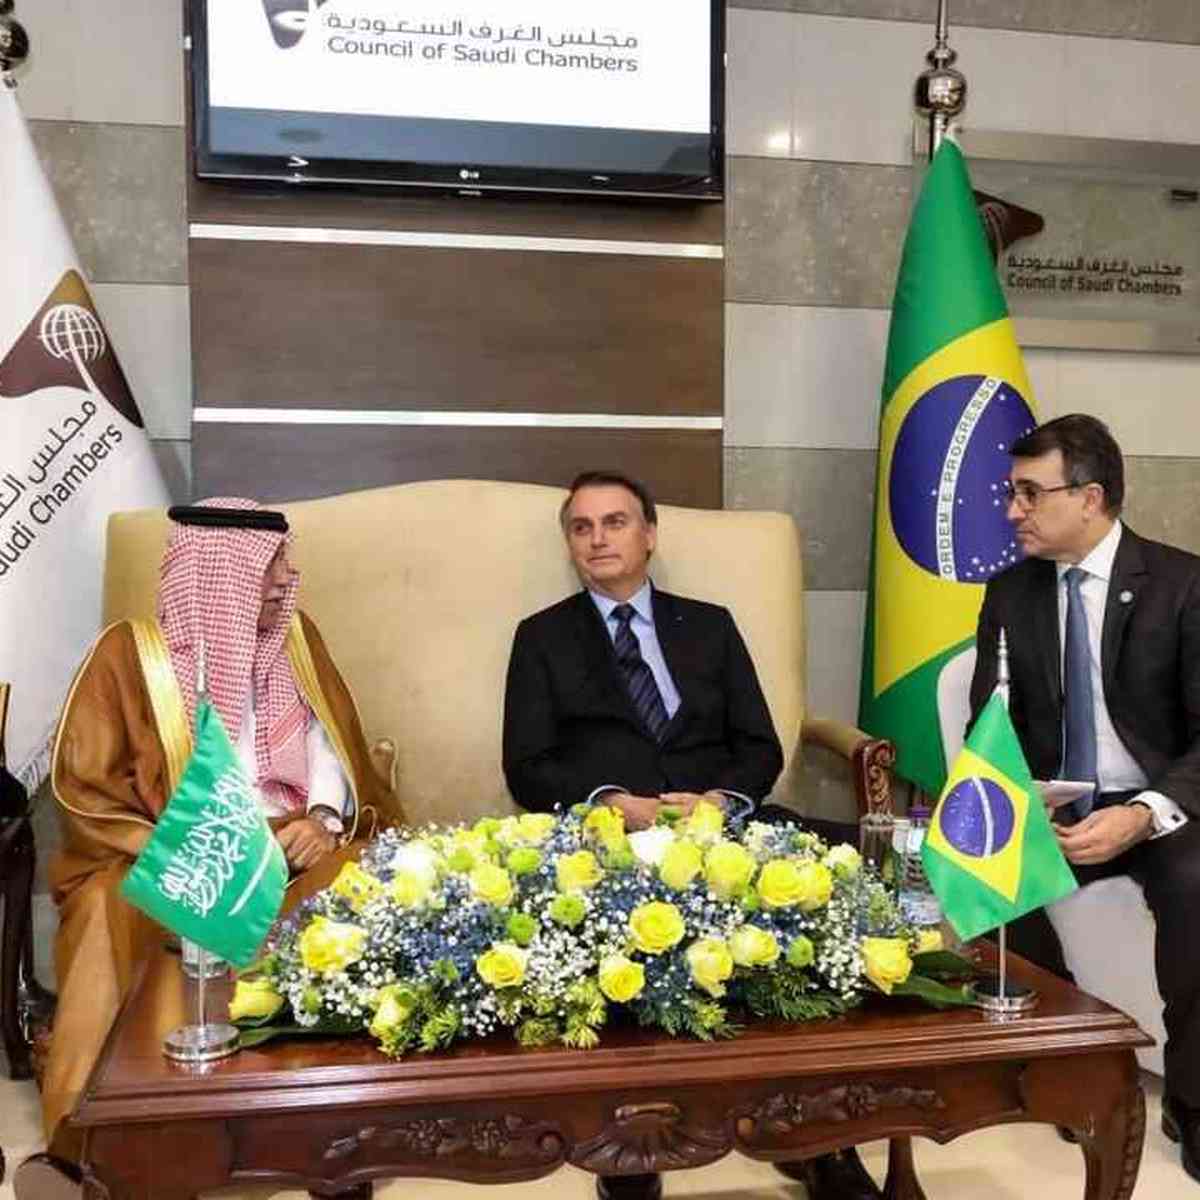 Bolsonaro recebeu pessoalmente segundo pacote de joias enviado pelo governo  saudita, diz jornal